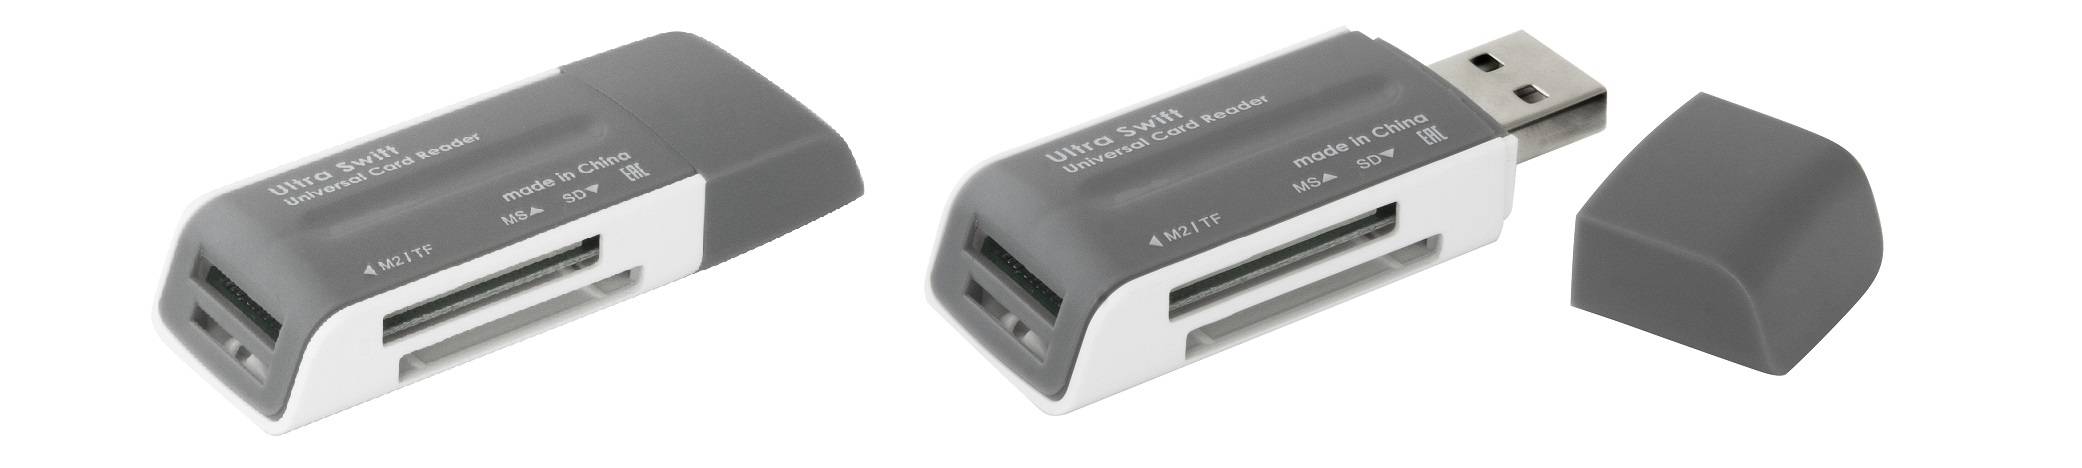 Defender Универсальный картридер Ultra Swift USB 2.0, 4 слота, скорость до 5 Гбит/с, режим «горячей» замены.